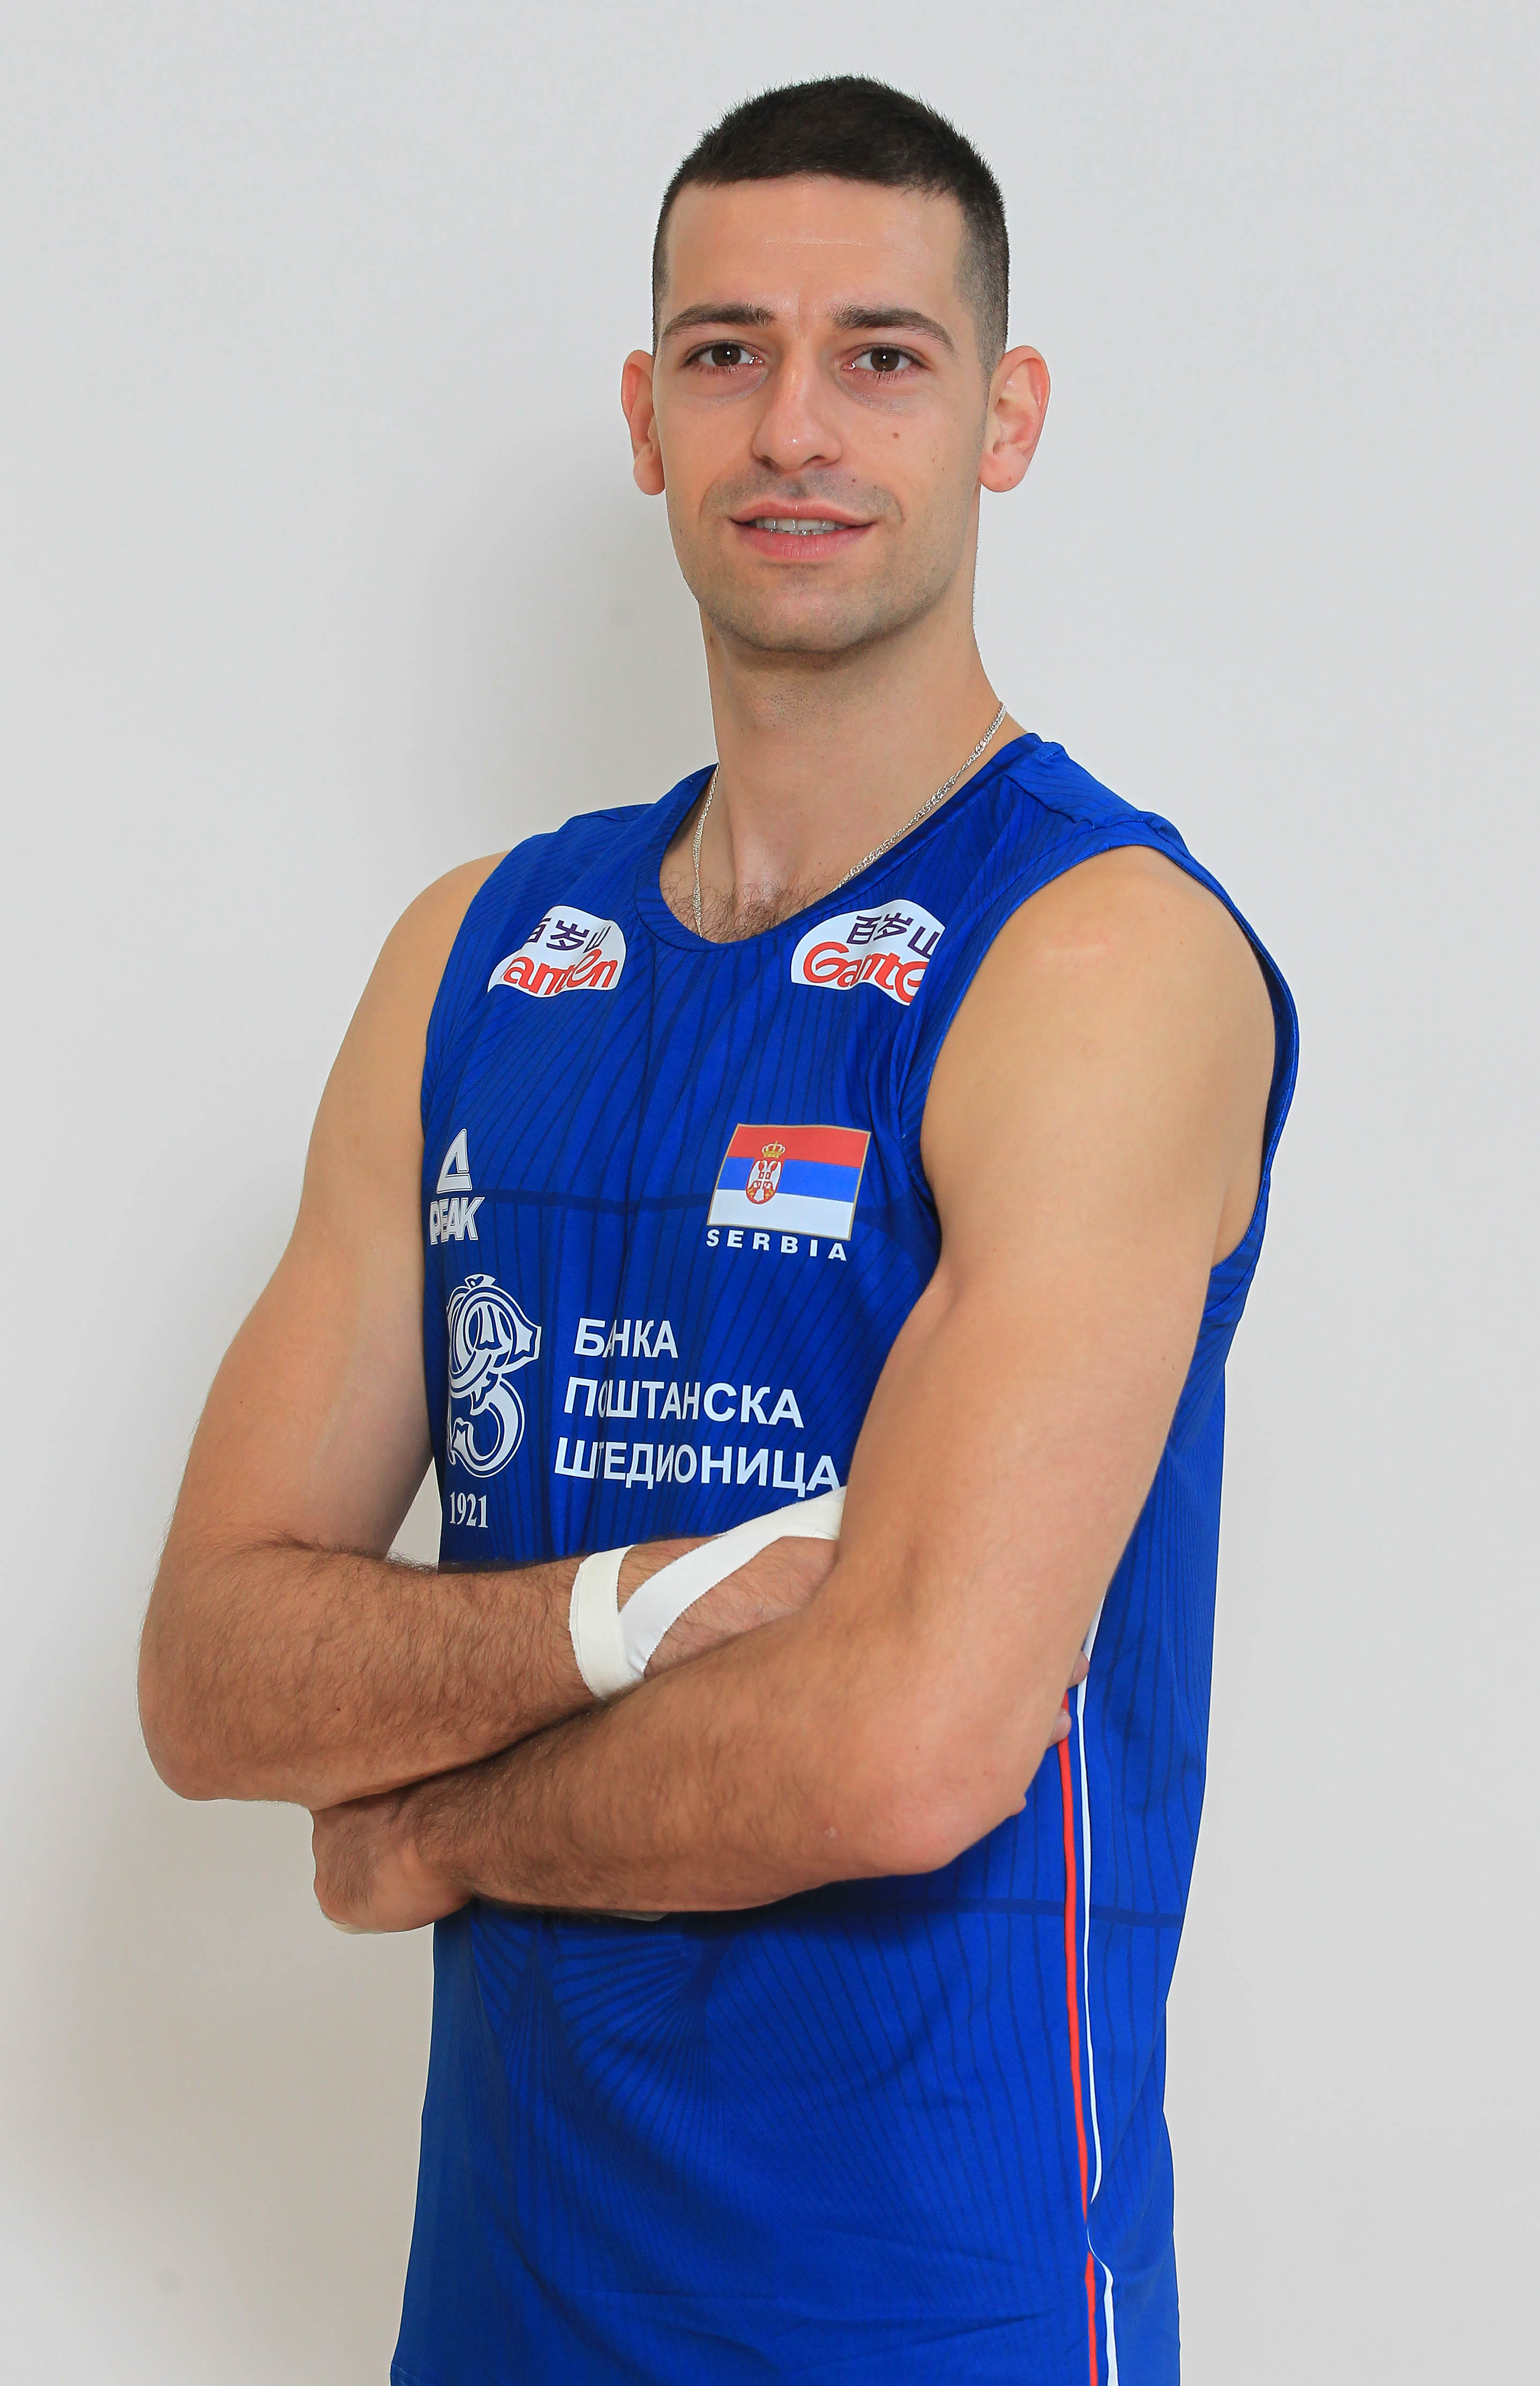 Pavle Perić